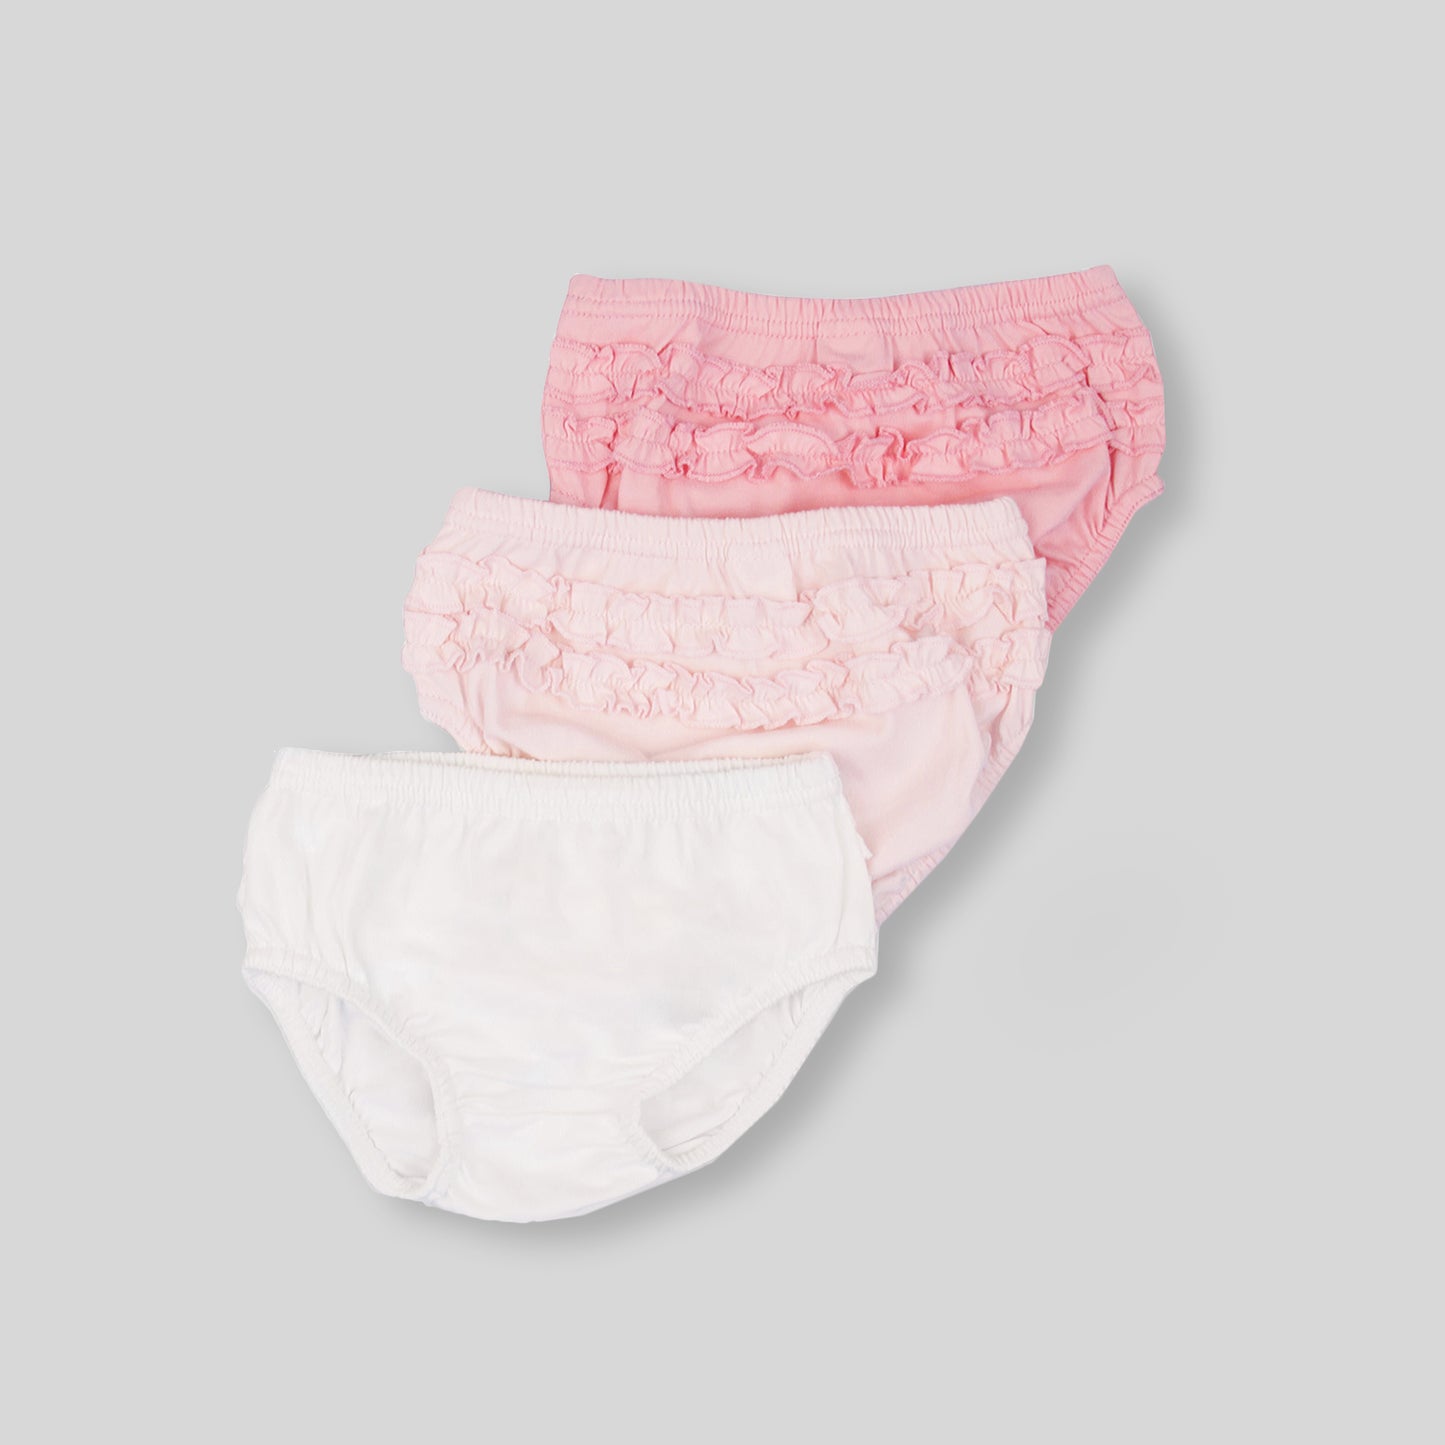 女童全棉包片內褲3件裝-粉紅色